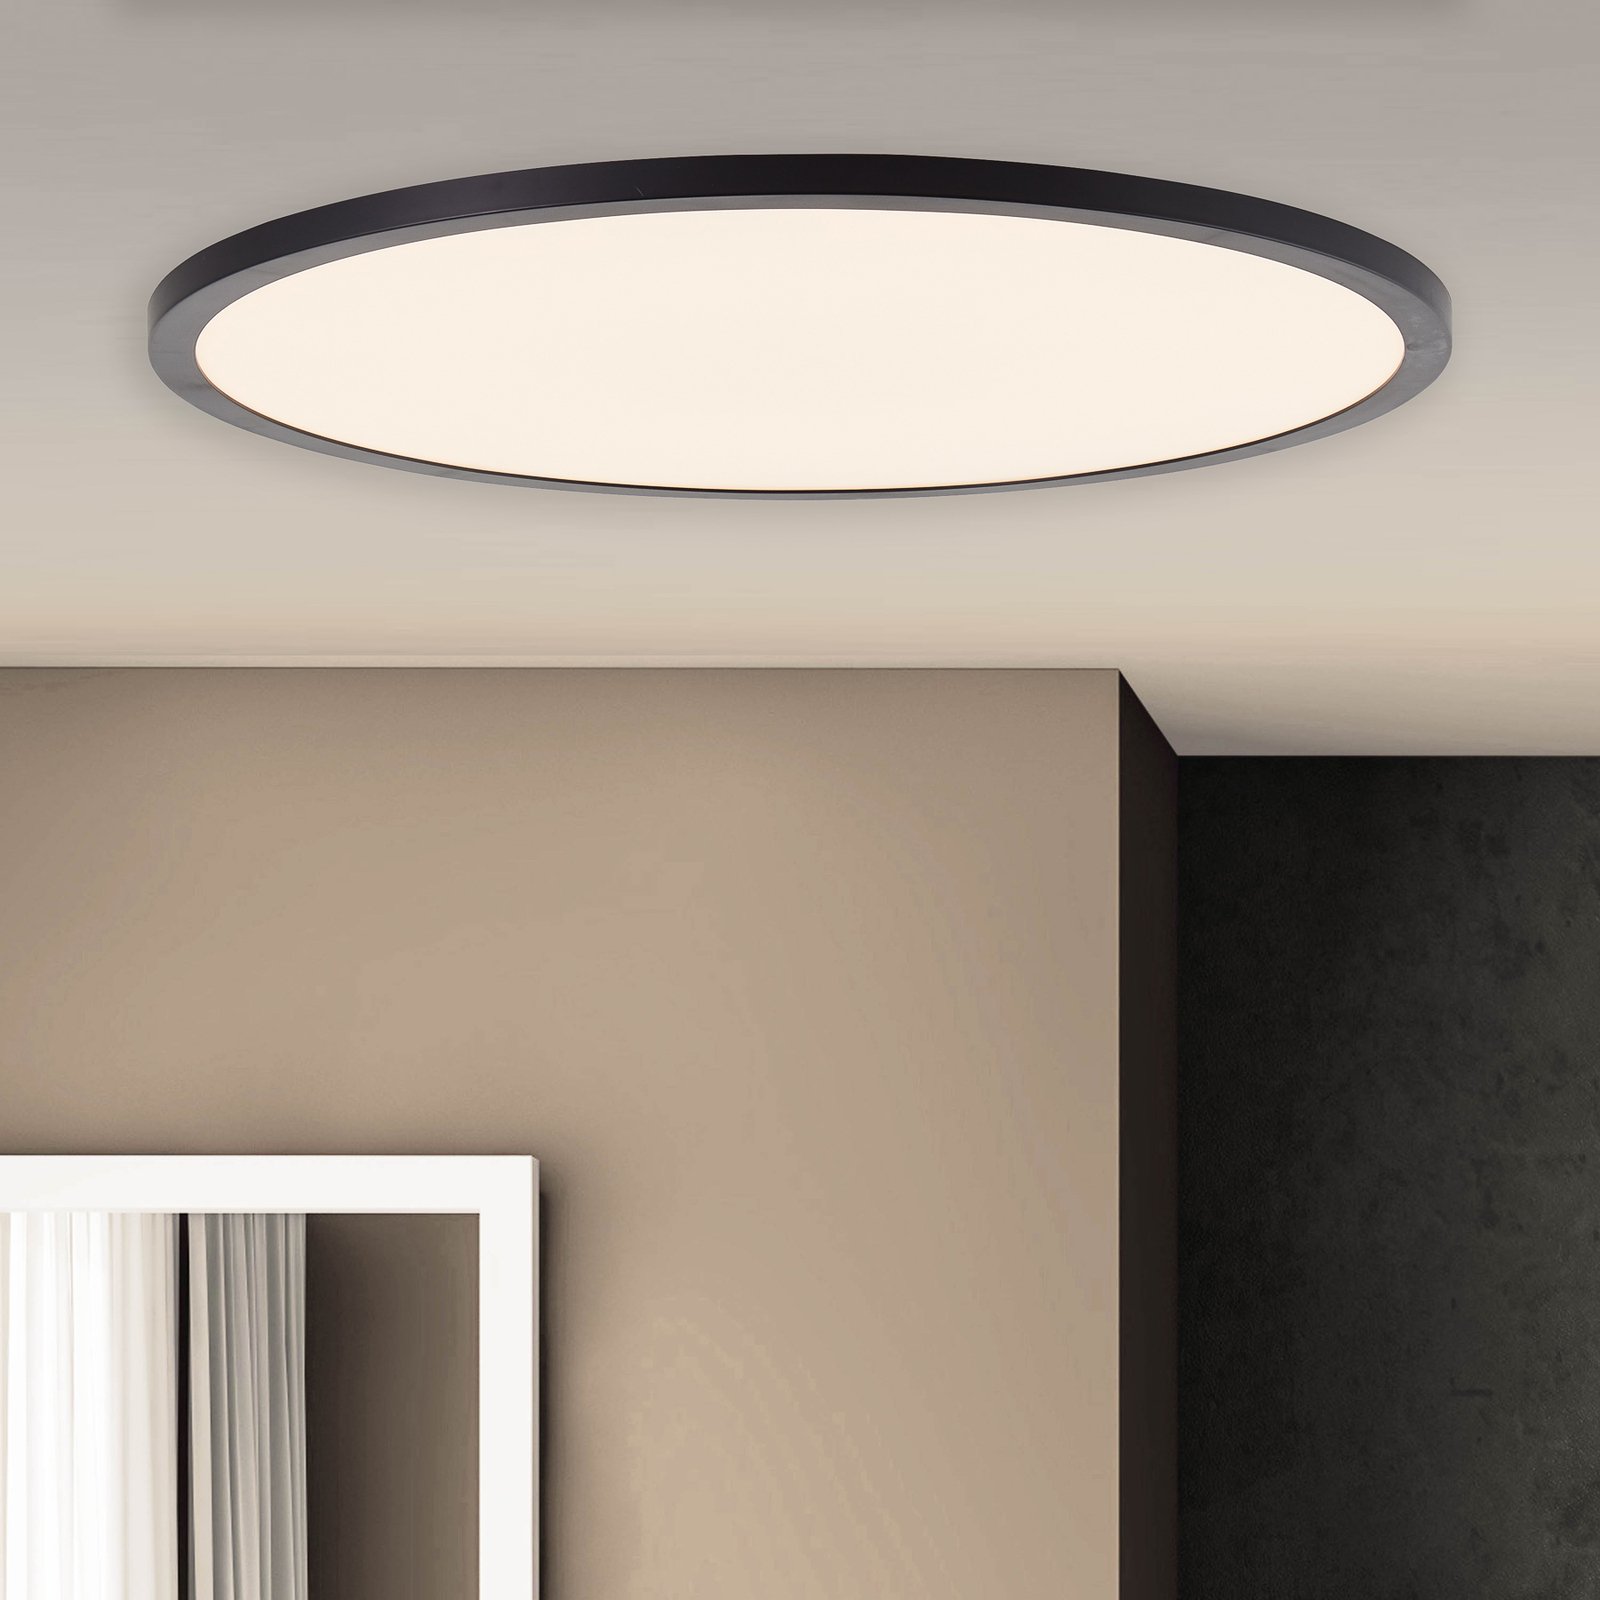 LED plafondlamp Tuco CCT, dimbaar, zwart Ø 50 cm